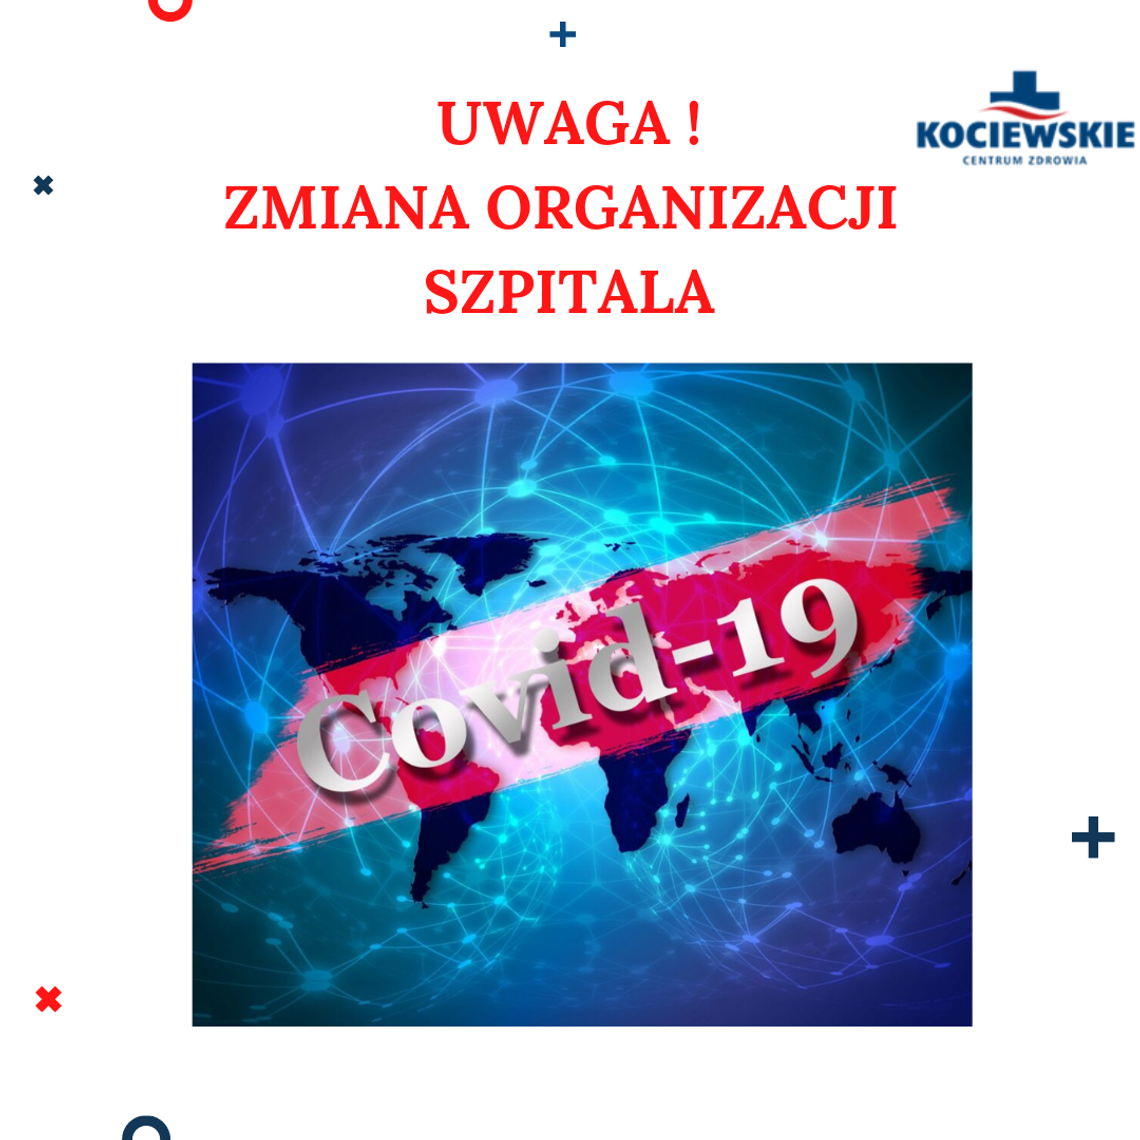 UWAGA! Ważna zmiana organizacji Kociewskiego Centrum Zdowia!